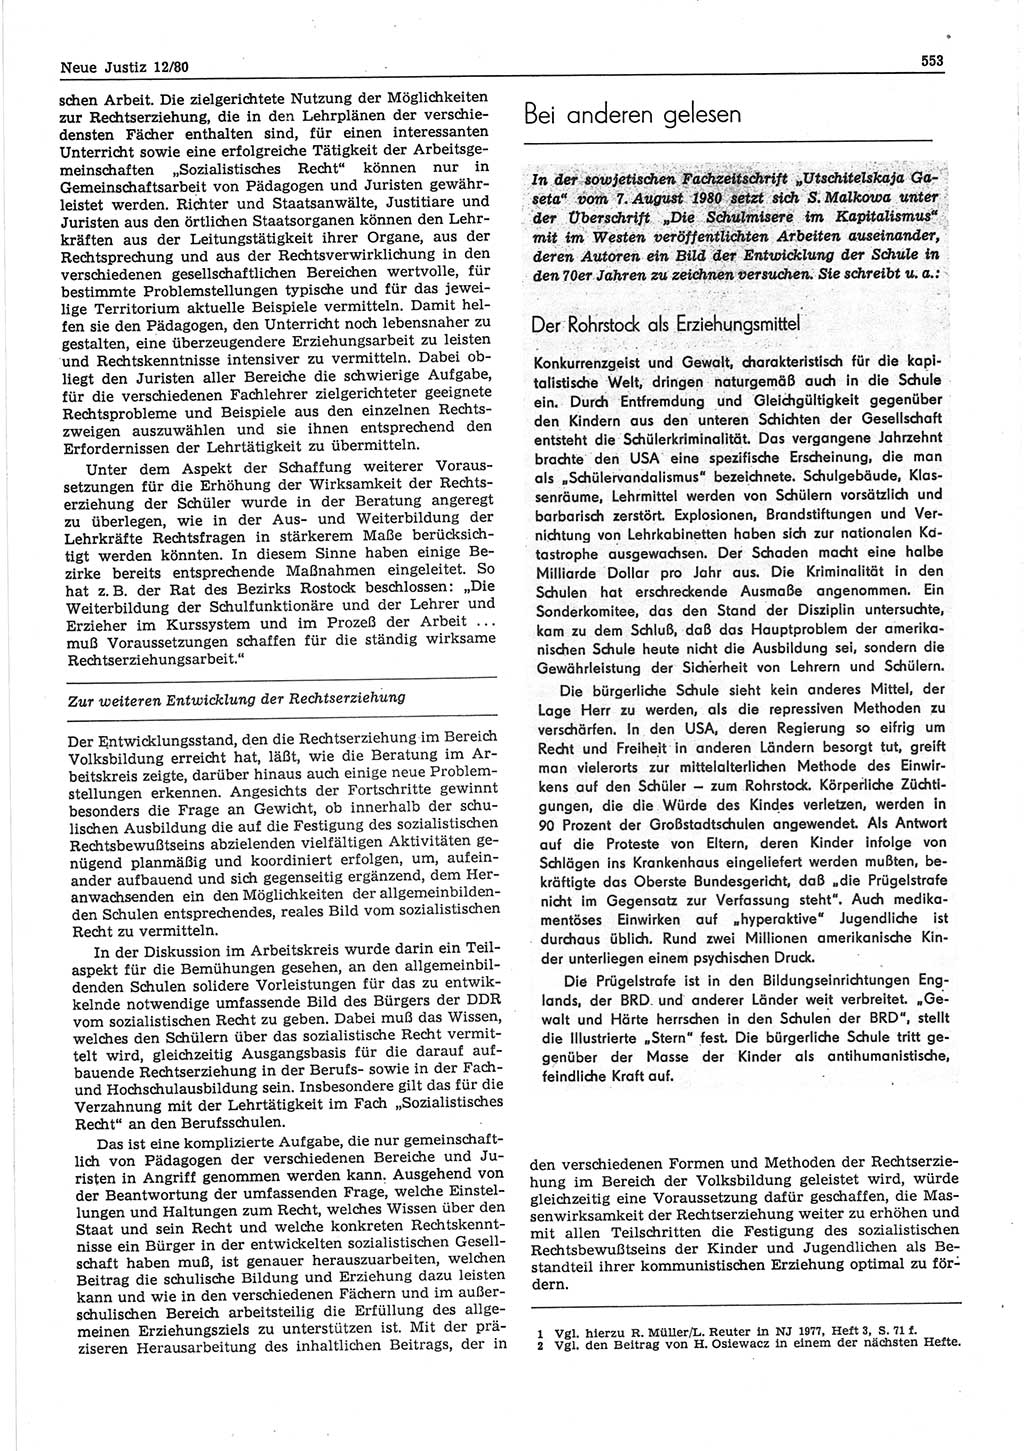 Neue Justiz (NJ), Zeitschrift für sozialistisches Recht und Gesetzlichkeit [Deutsche Demokratische Republik (DDR)], 34. Jahrgang 1980, Seite 553 (NJ DDR 1980, S. 553)